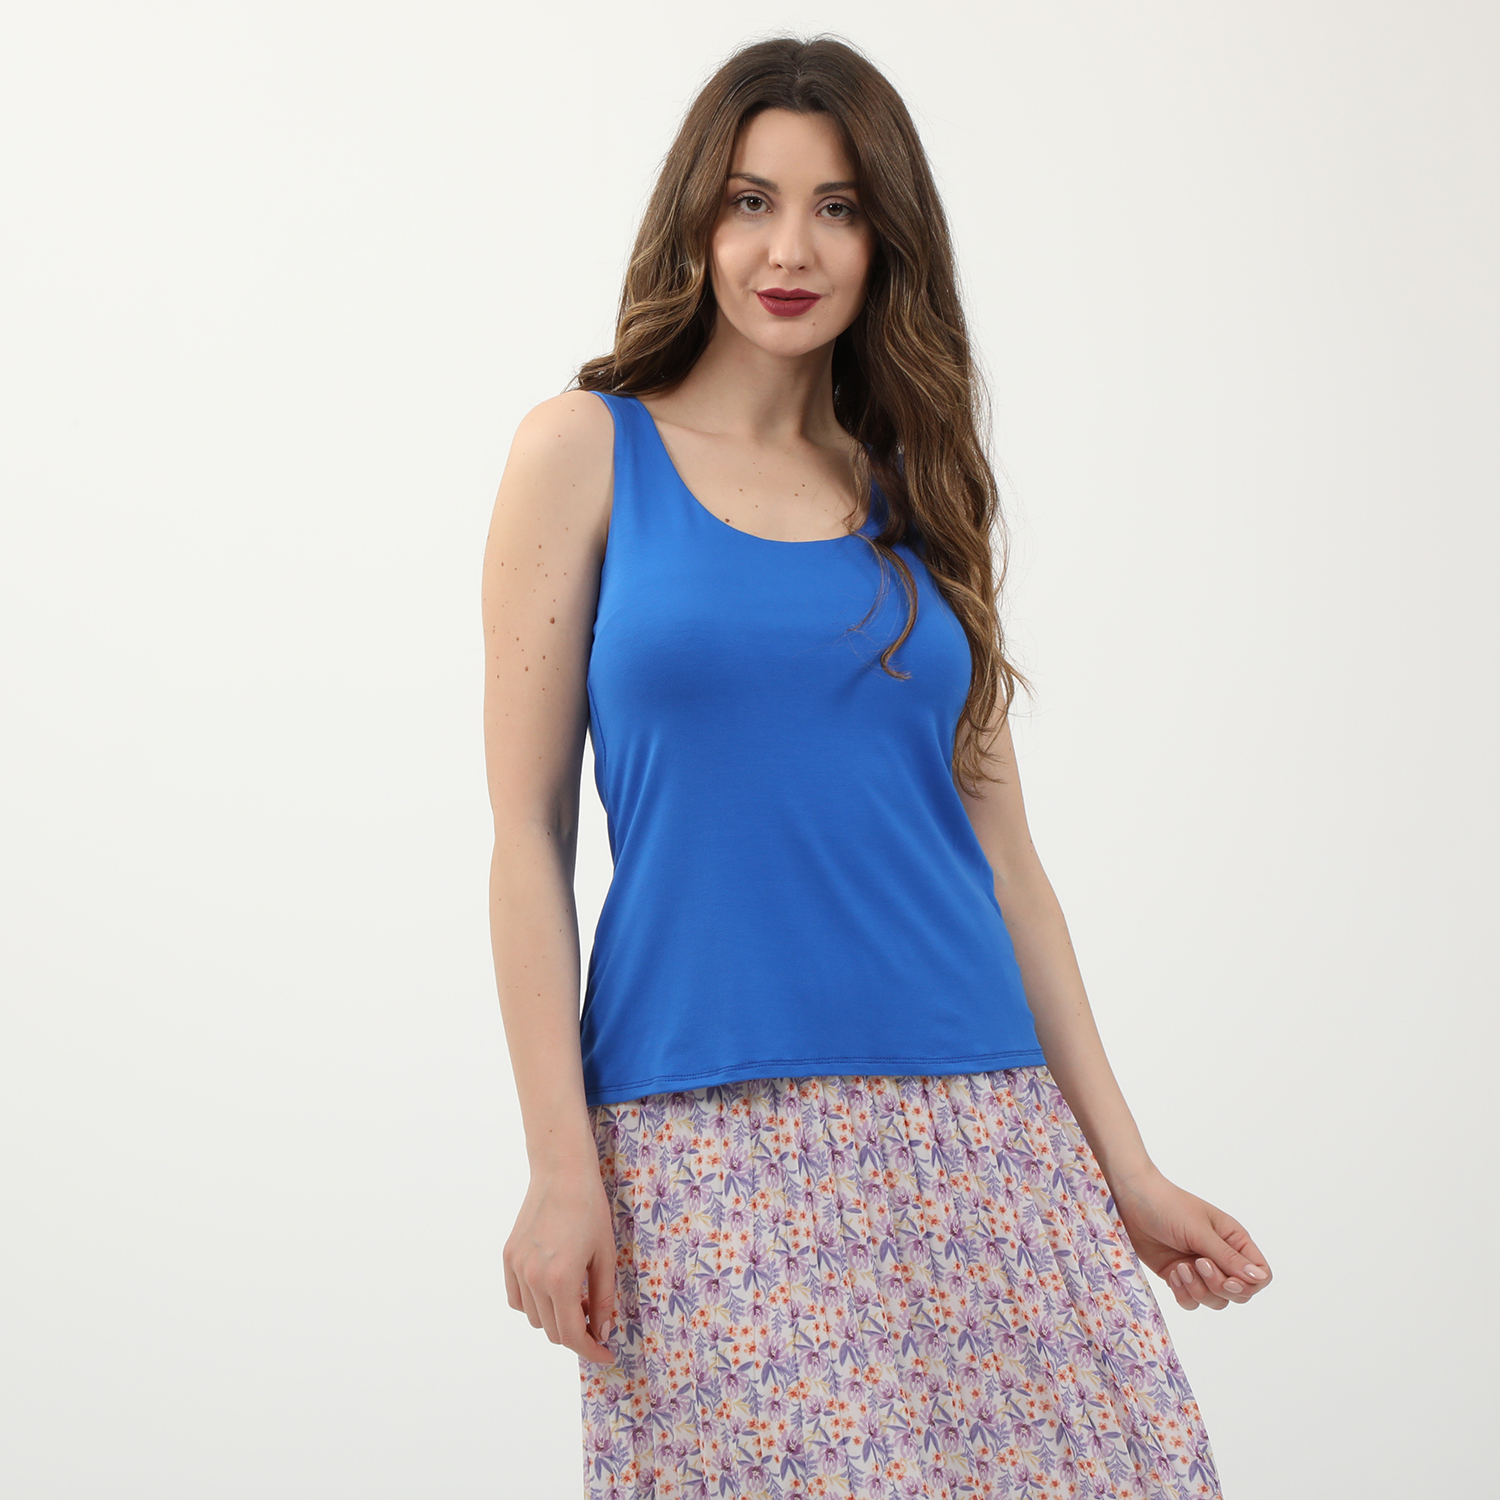 Γυναικεία/Ρούχα/Μπλούζες/Αμάνικες ATTRATTIVO - Γυναικείο basic top ATTRATTIVO μπλε